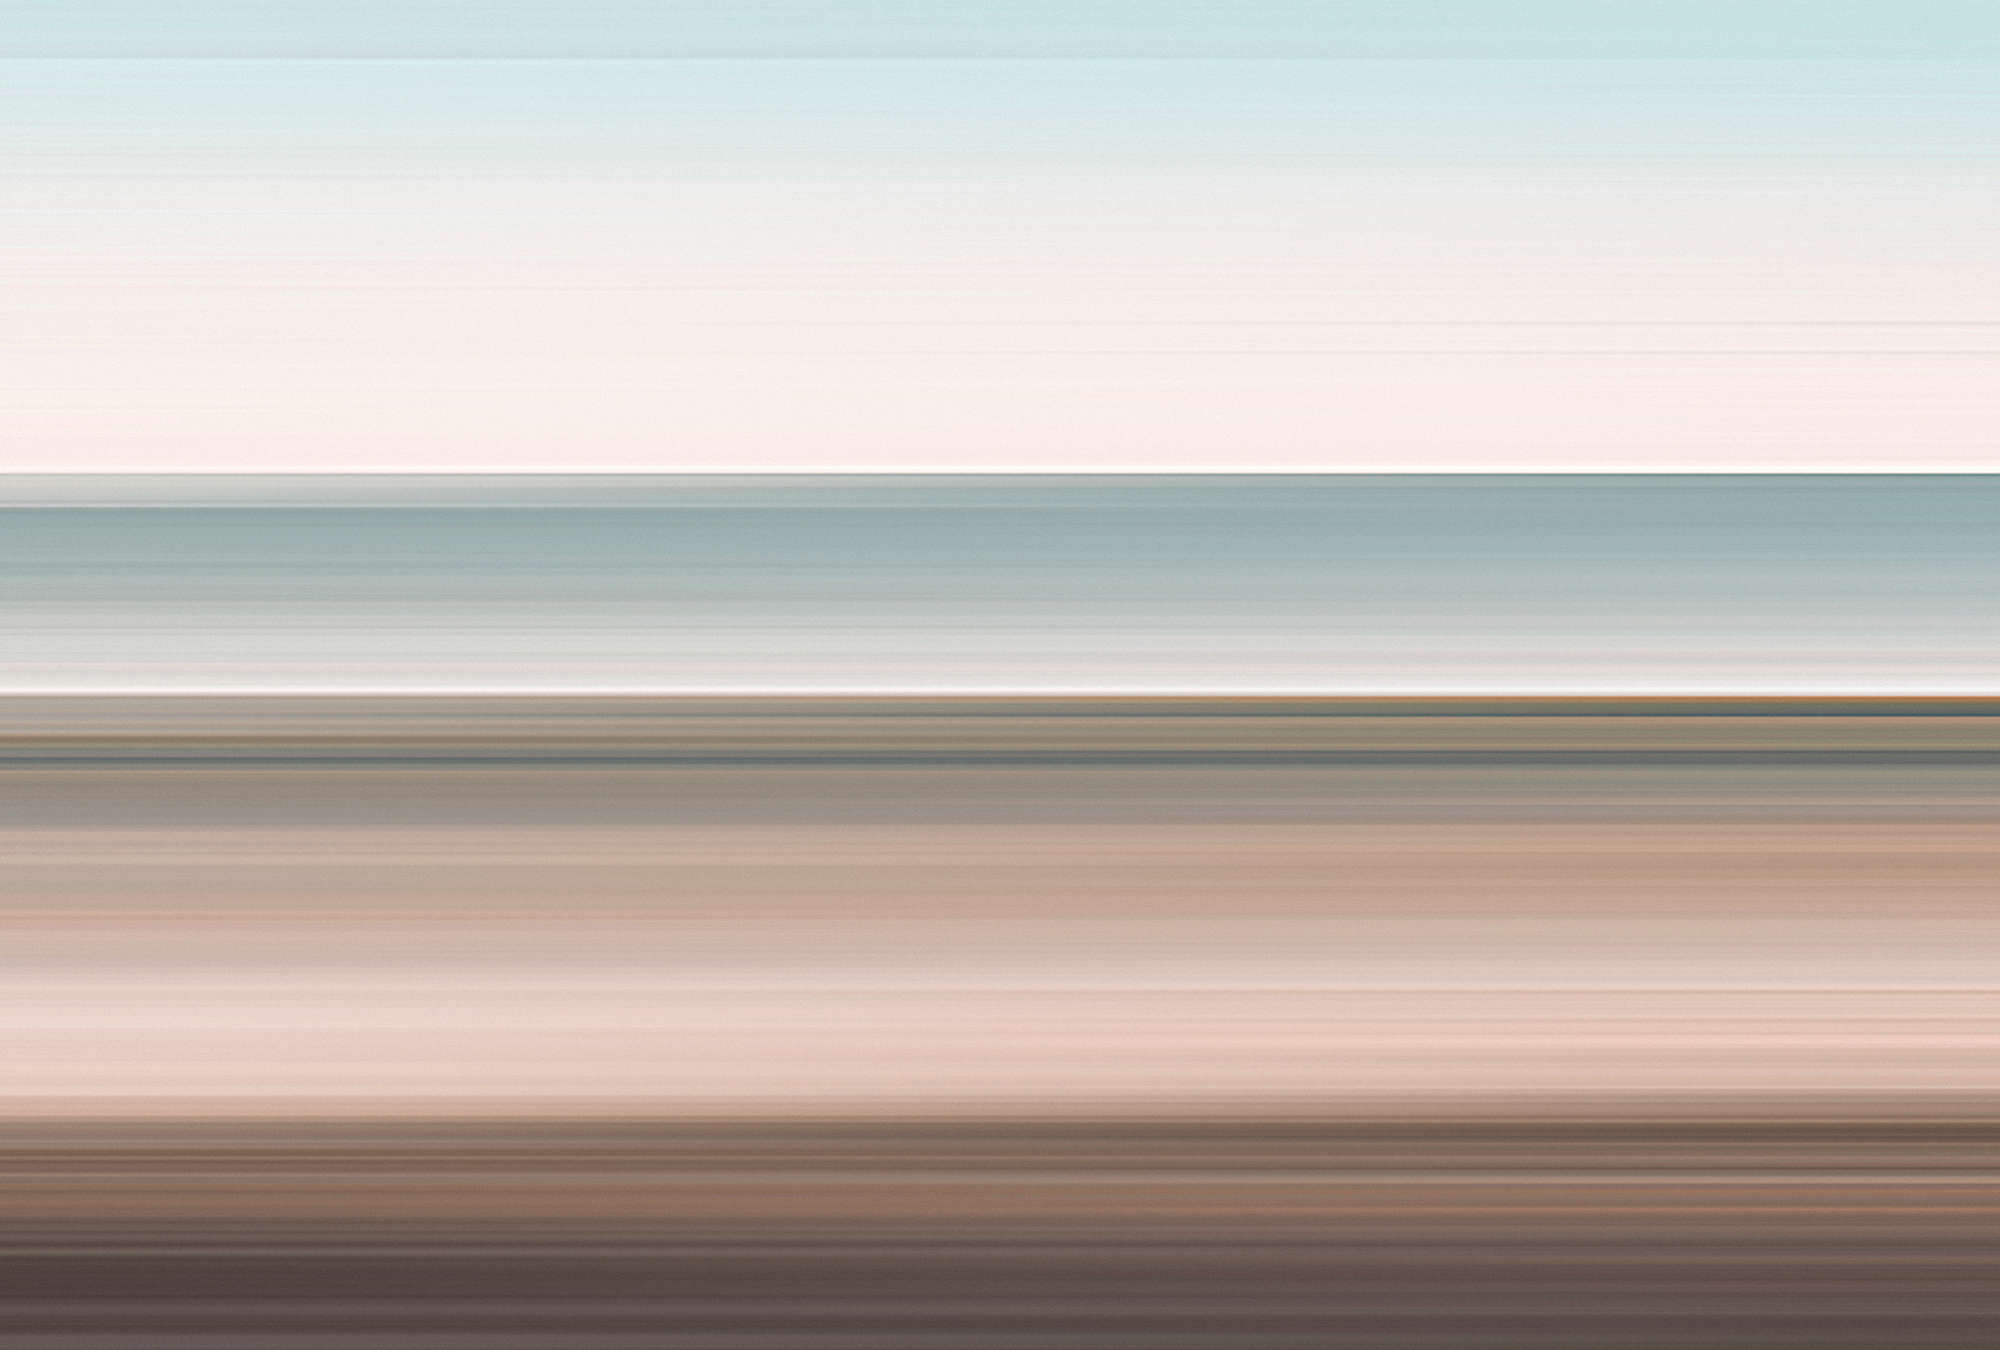             Horizon 2 – Fototapete abstrakte Landschaft mit Liniendesign
        